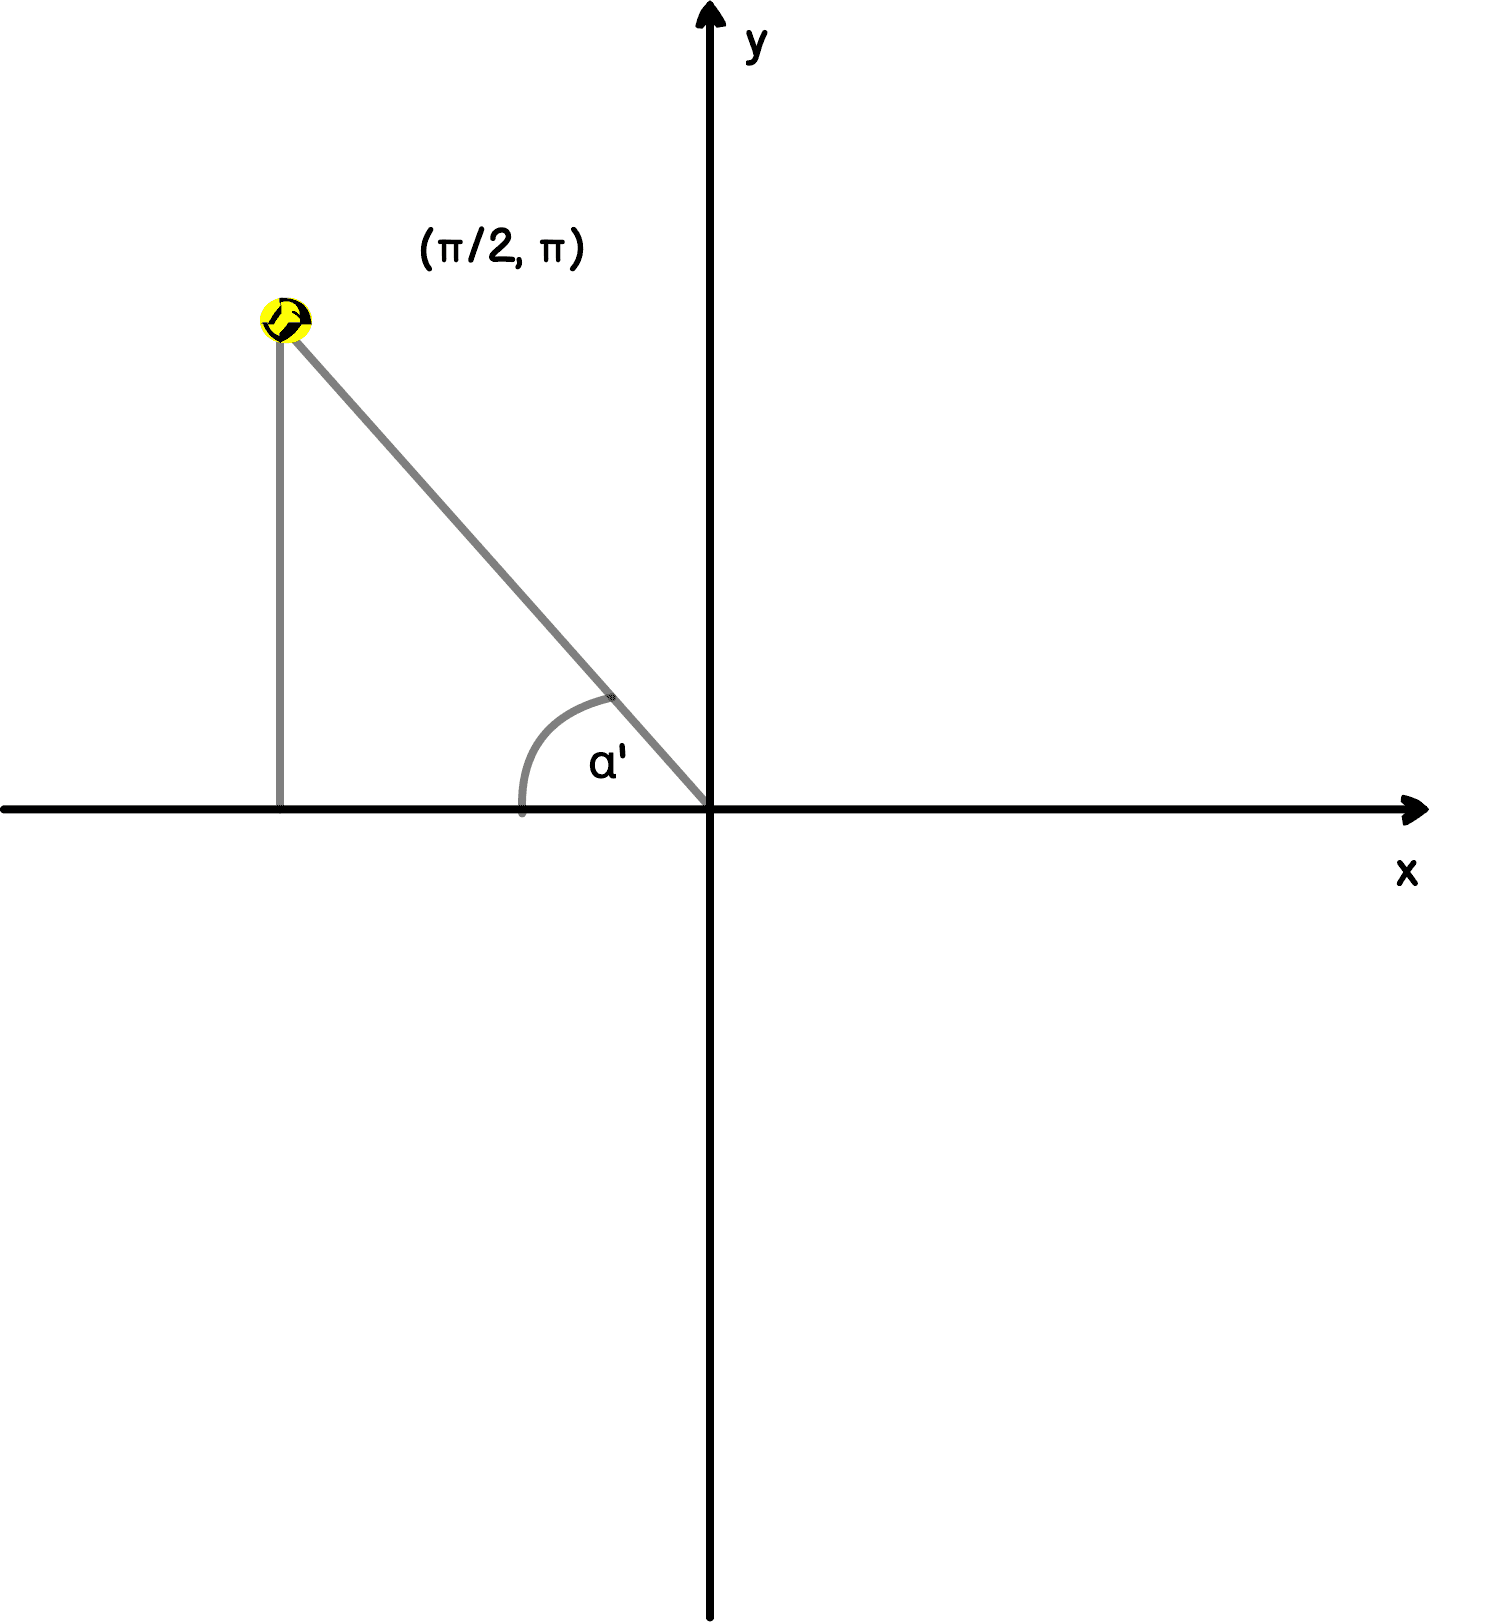 Układ współrzędnych z narysowanym trójkątem prostokątnymi w lewej górnej ćwiartce. Znajduje się w niej również napis (pi/2, pi).